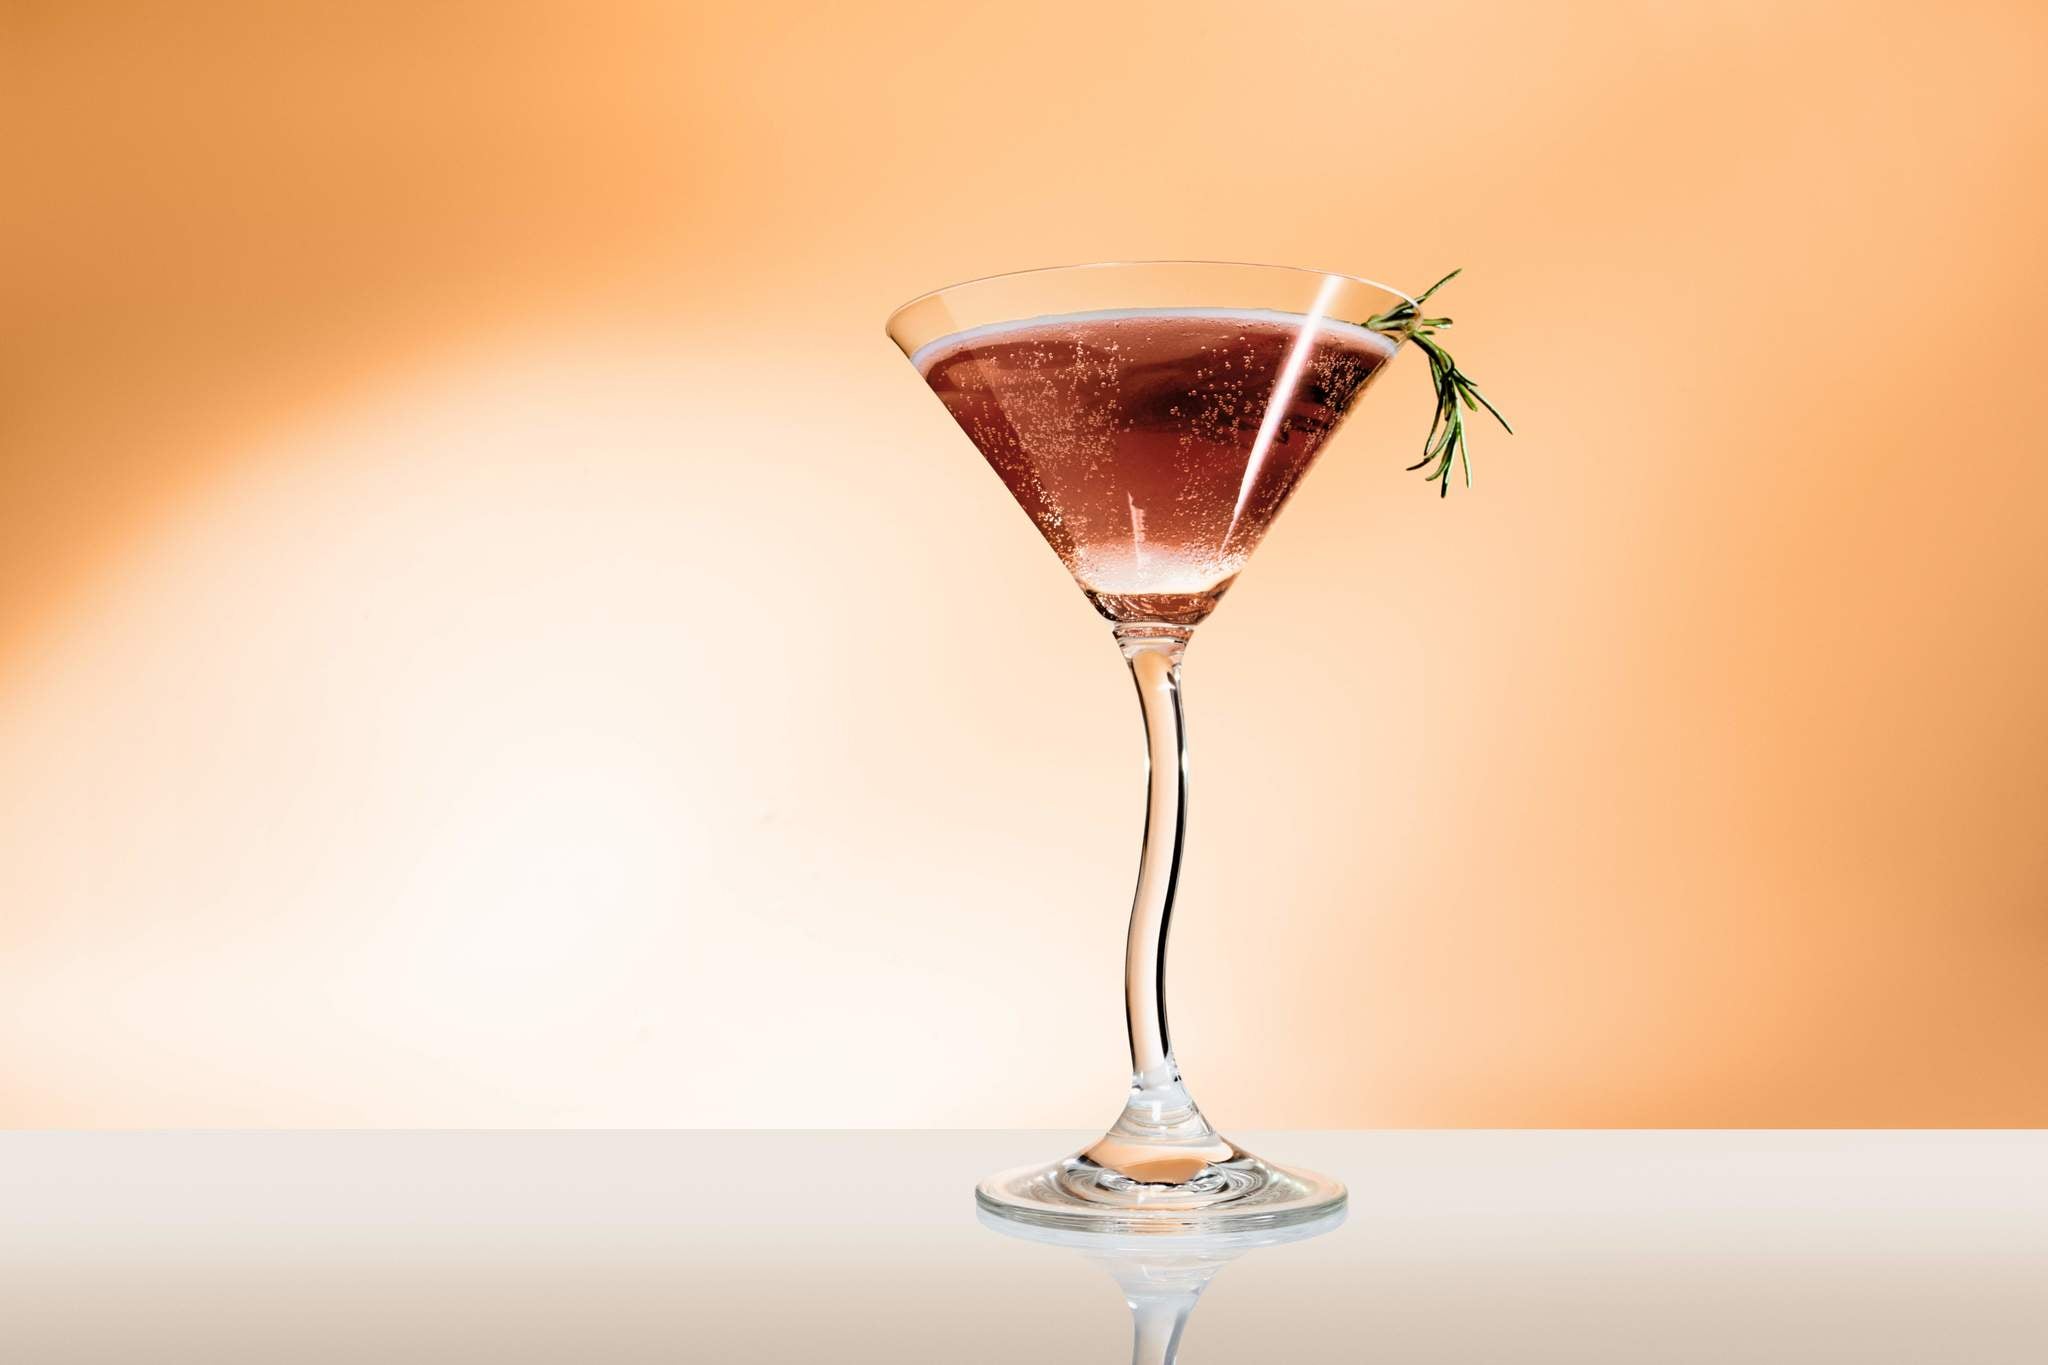 Douze Apricot & Za'atar in tall martini glass